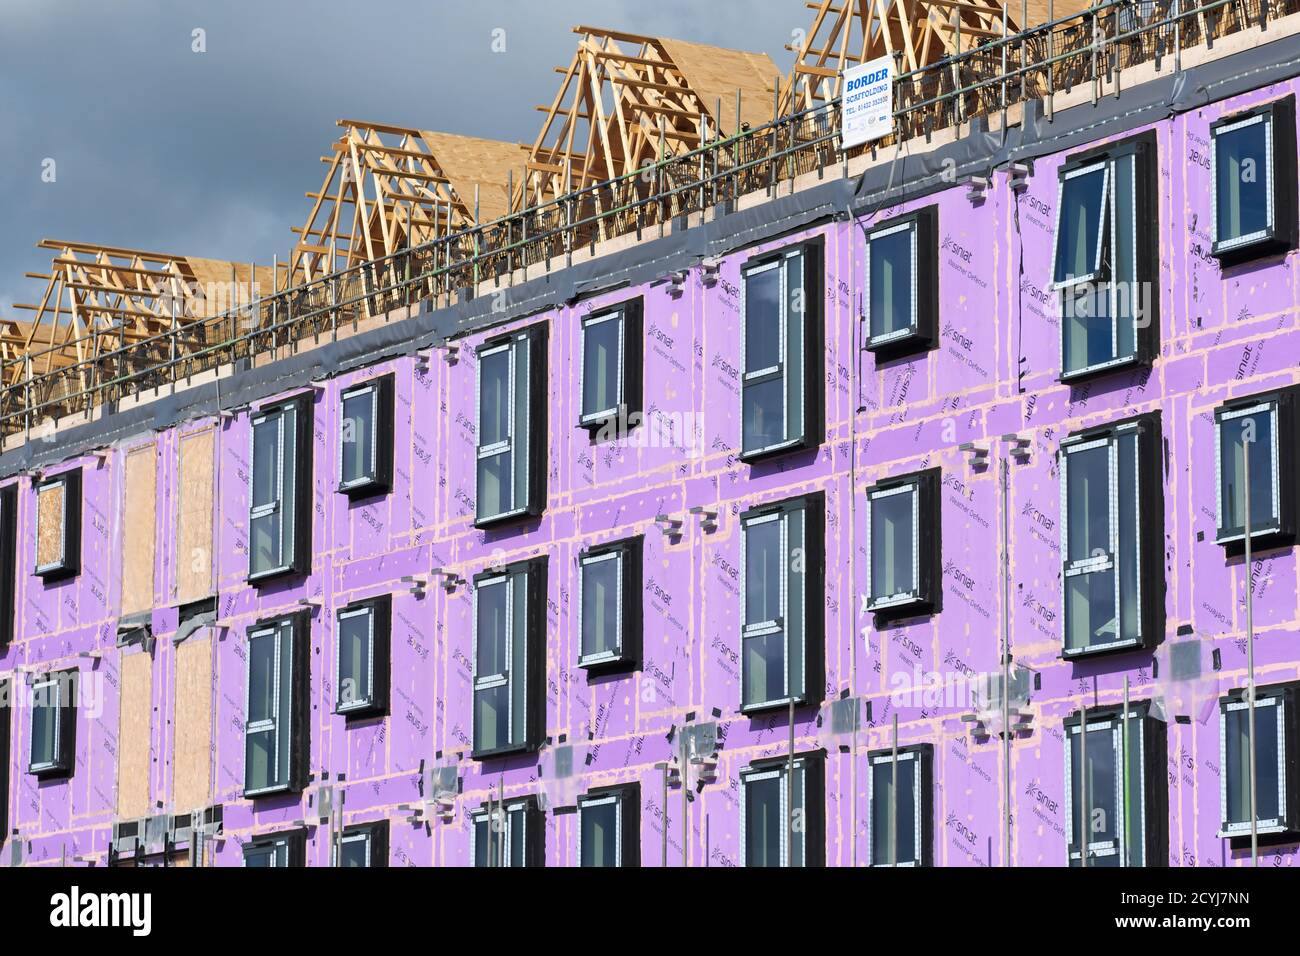 Construction modulaire préfabriquée de nouveaux logements pour étudiants en cours de construction pour Hereford Collège des Arts ( HCA ) Herefordshire Royaume-Uni en septembre 2020 Banque D'Images